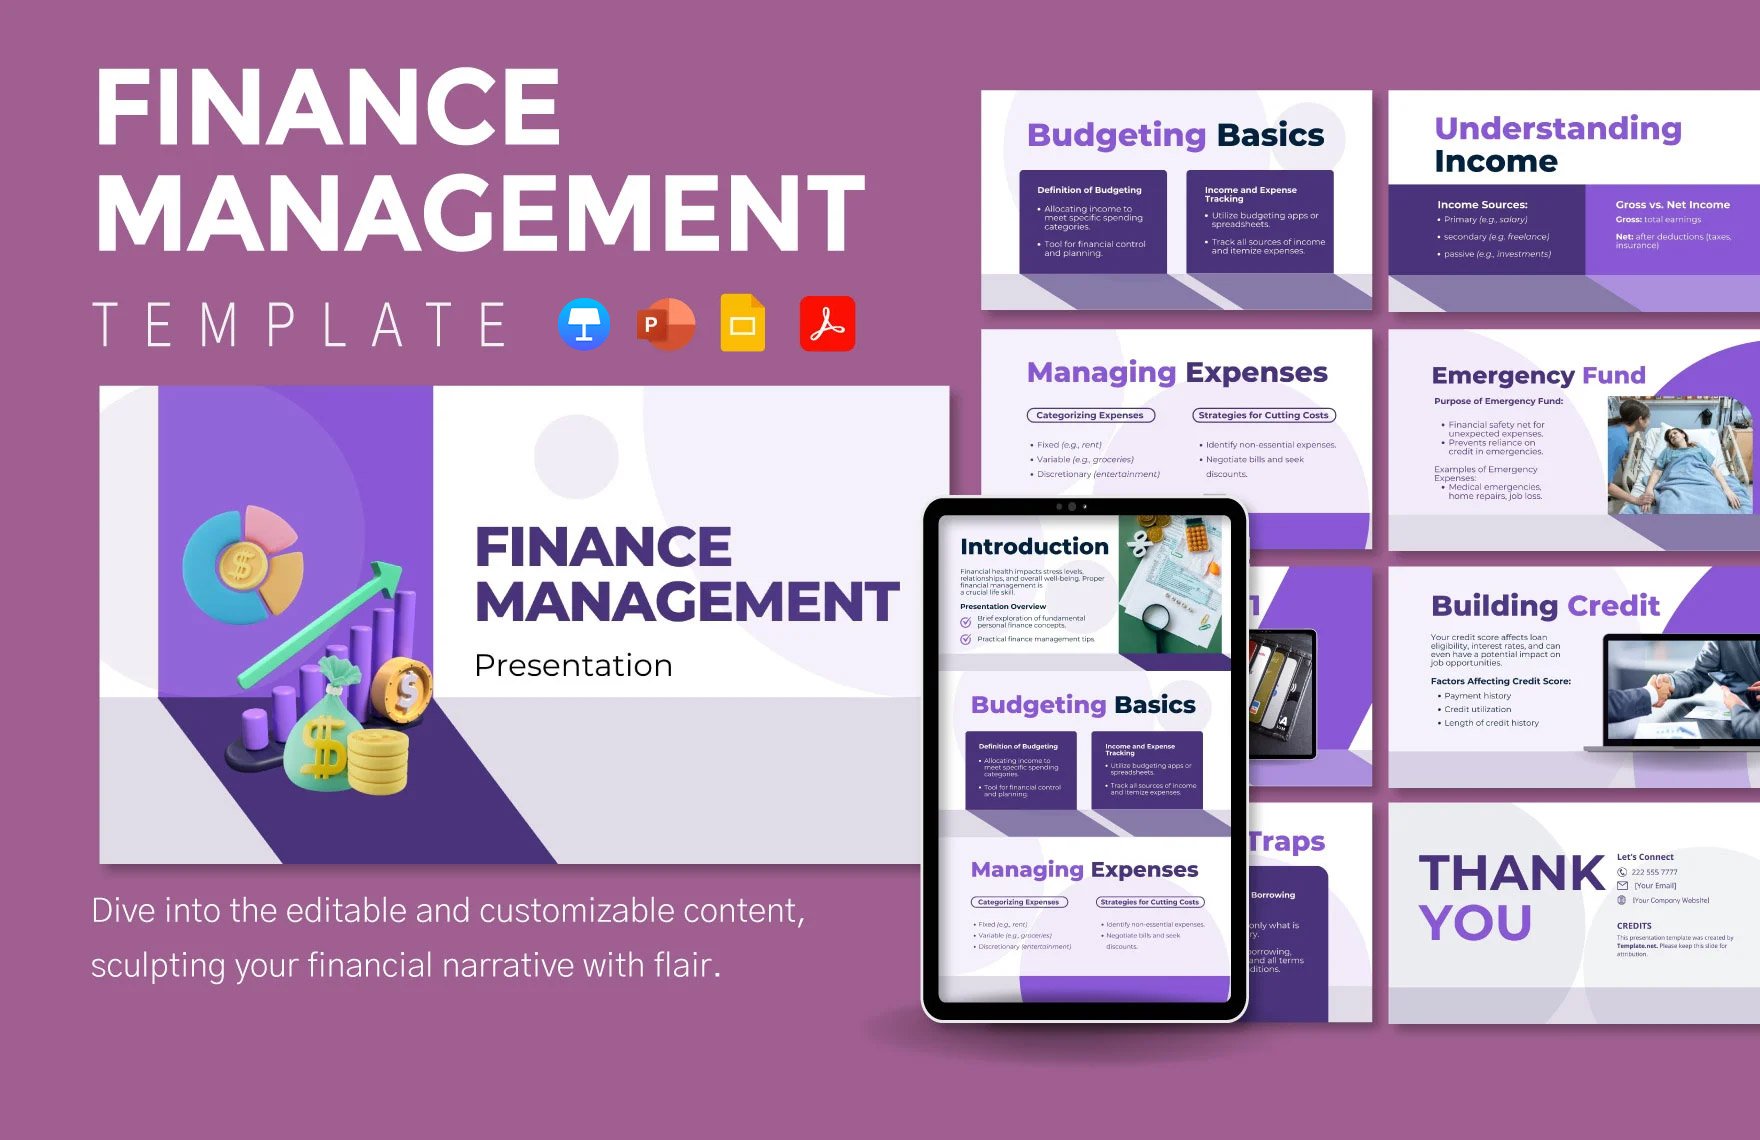 Finance Management Template